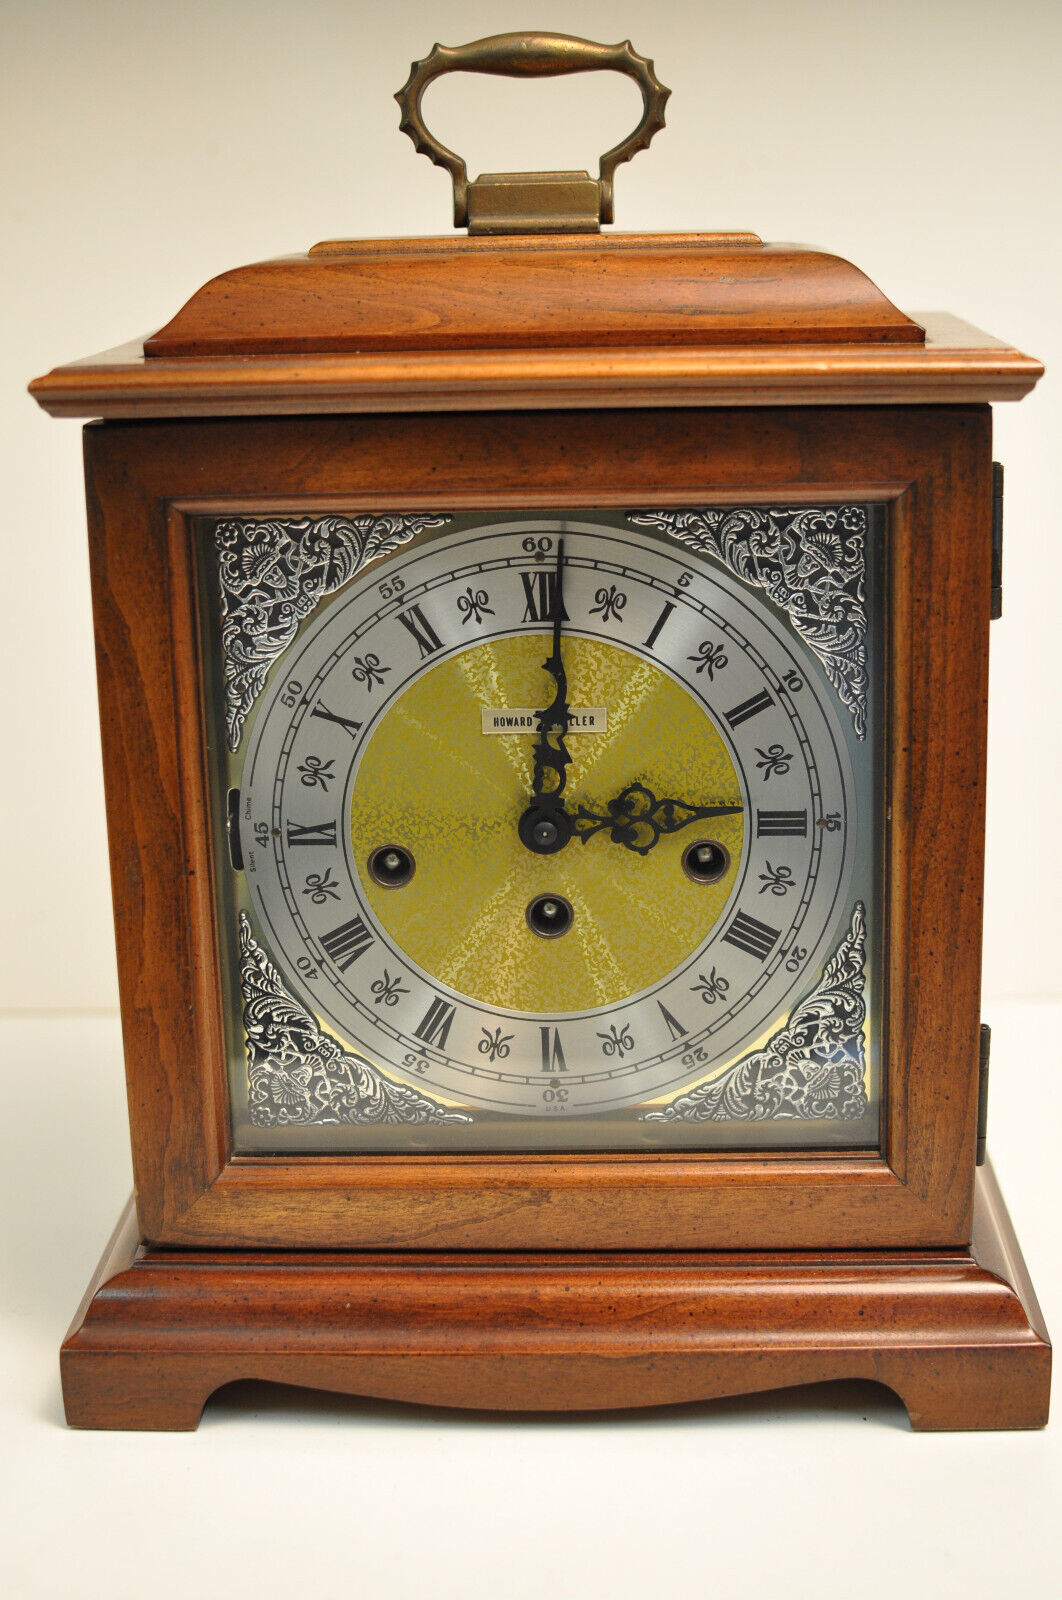 1989 Vintage Howard Miller Mantle Clock 340-020, West German Movement  - Repair